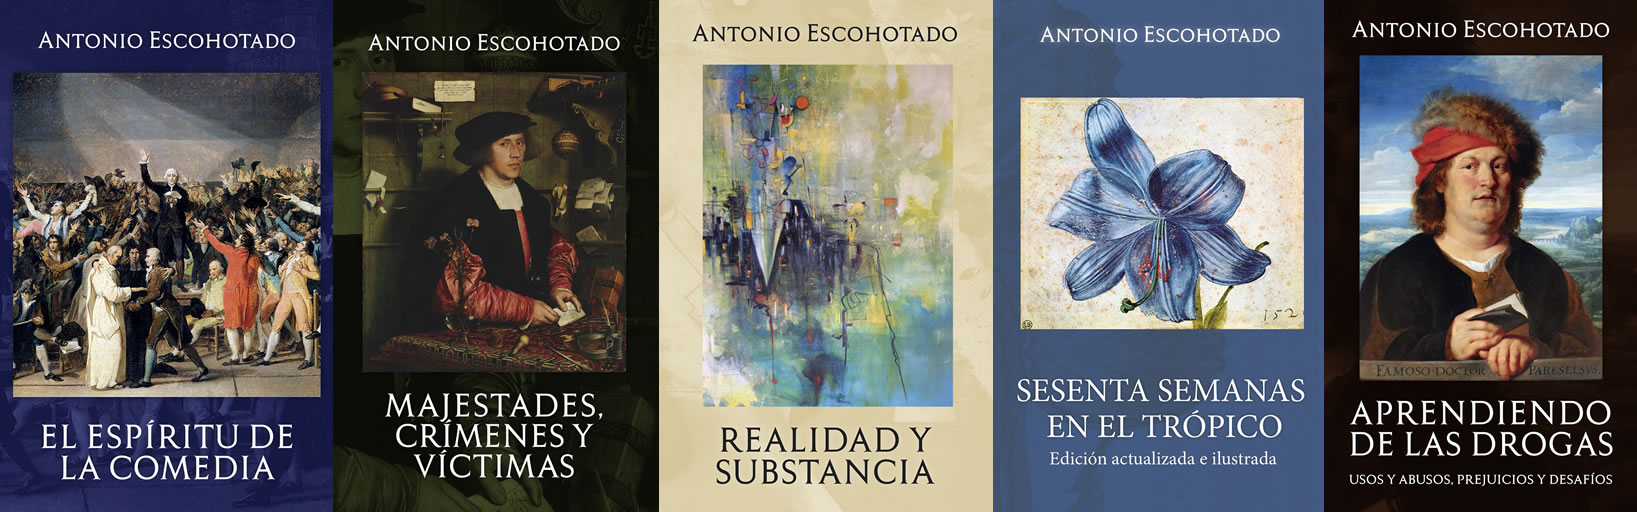 Editorial La Emboscadura - Libros de Antonio Escohotado